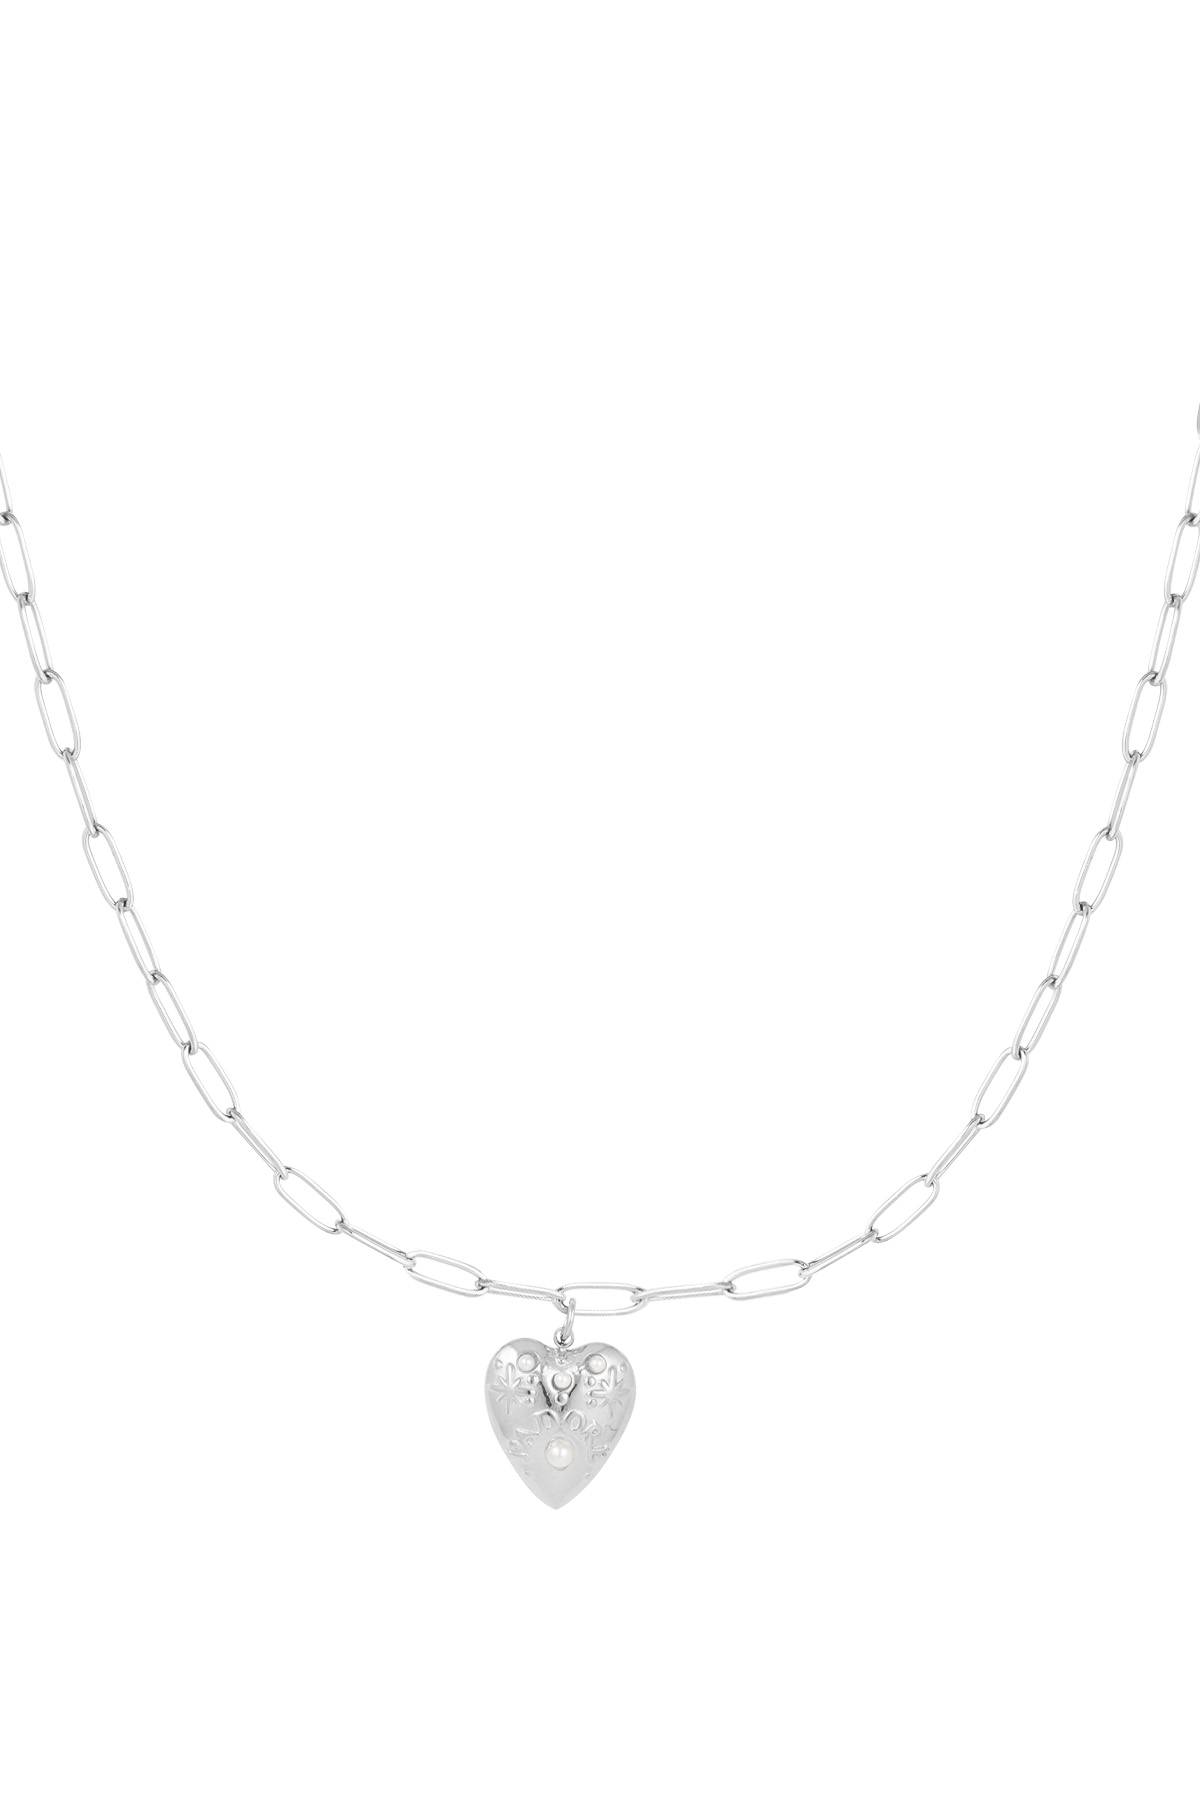 Halskette Herz aus Silber - silber h5 